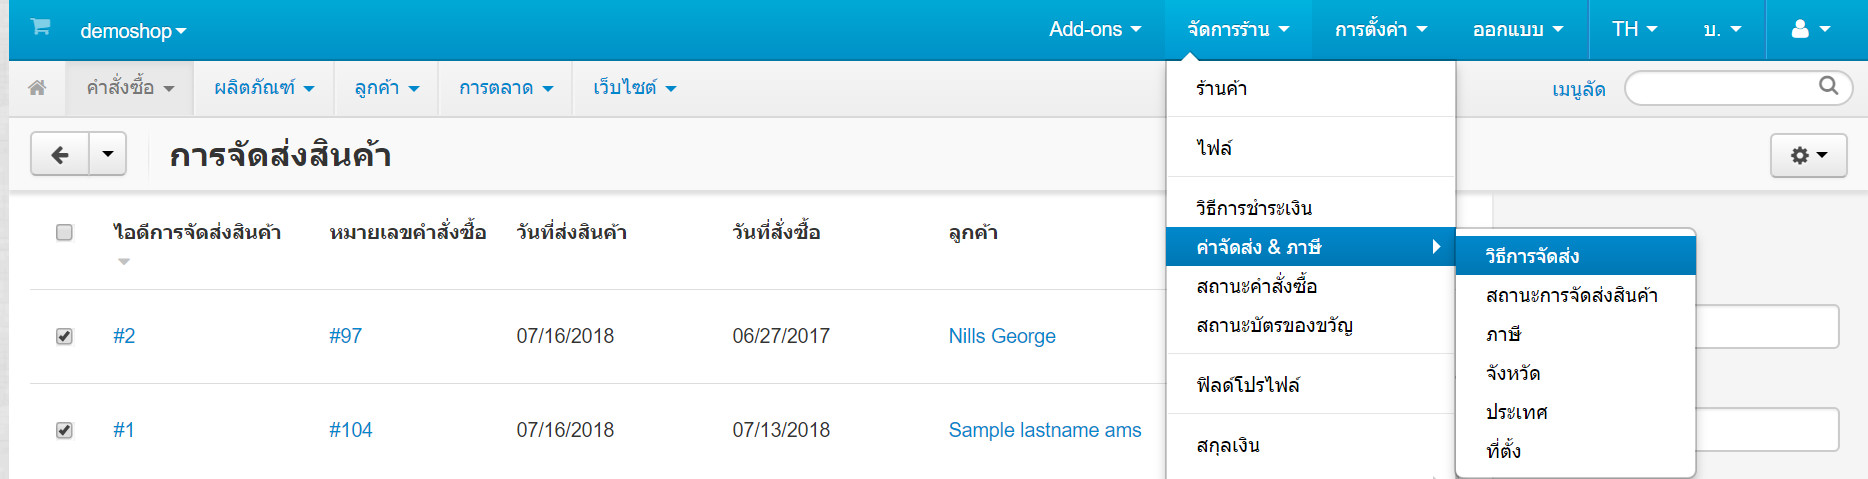 เว็บไซต์สำเร็จรูปไทย - คู่มือร้านออนไลน์ - สั่งซื้อ - สถานะการจัดส่ง shipments status